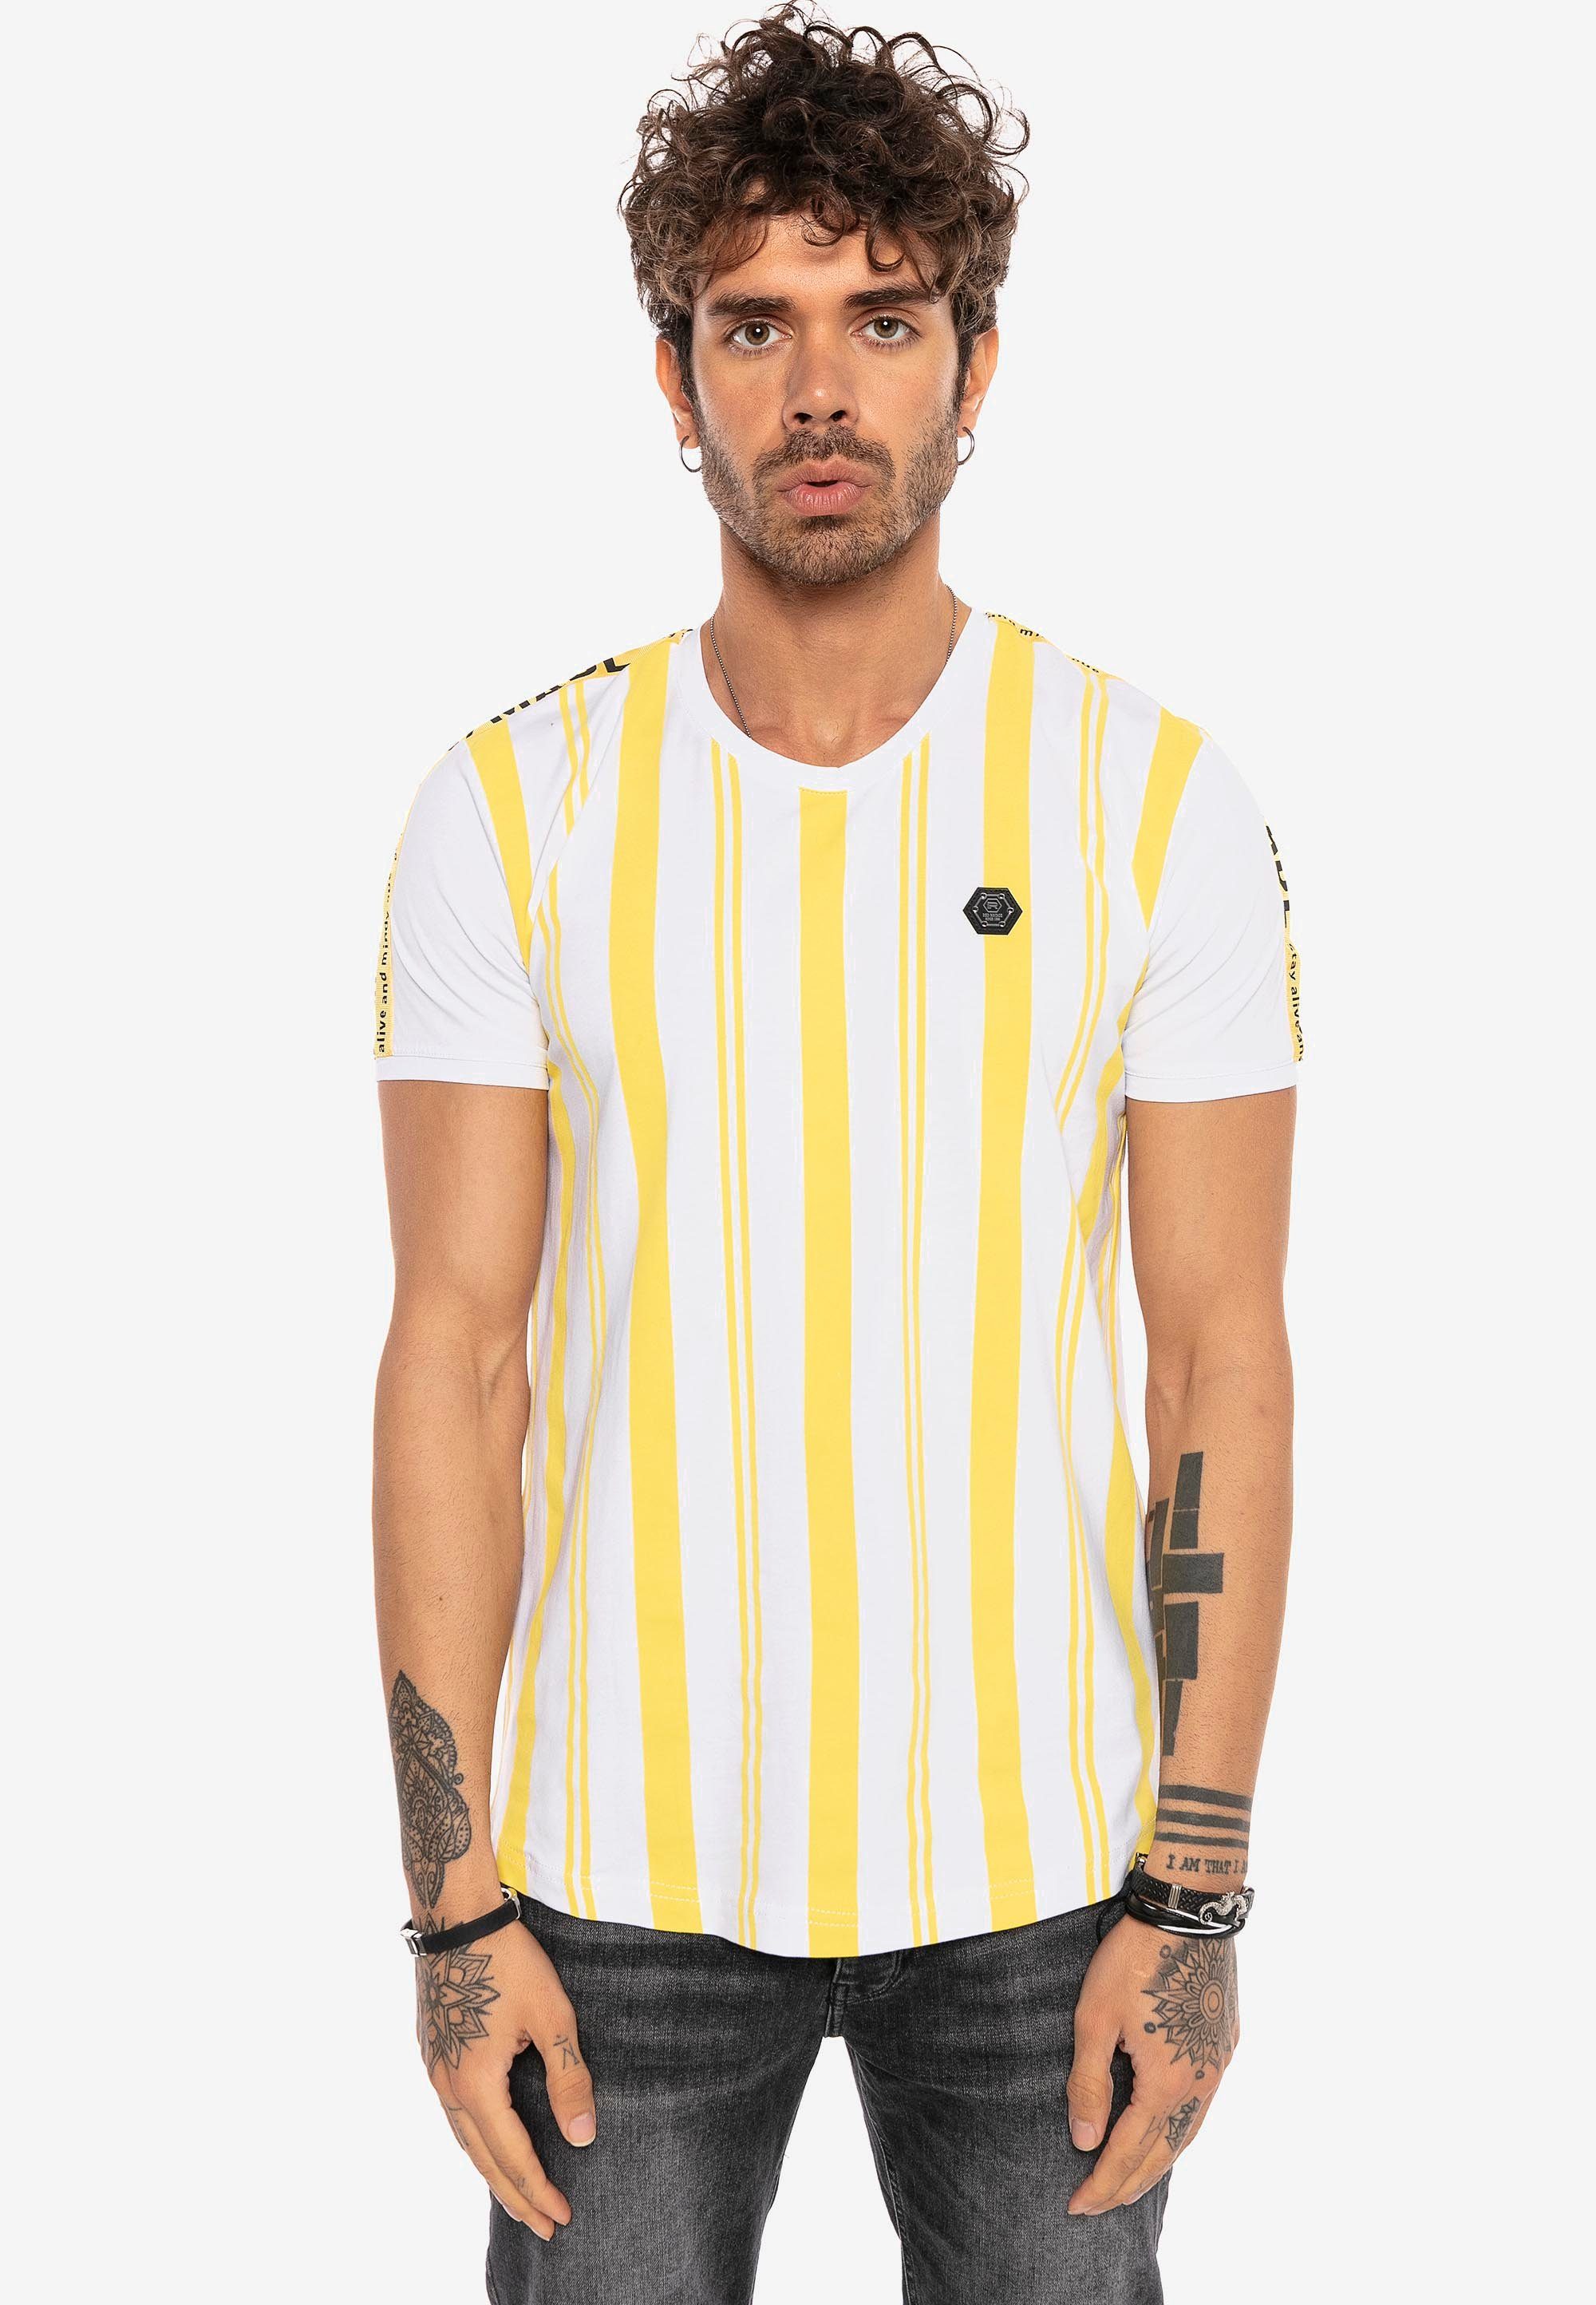 RedBridge T-Shirt Baltimore mit Summer Stripes gelb-weiß